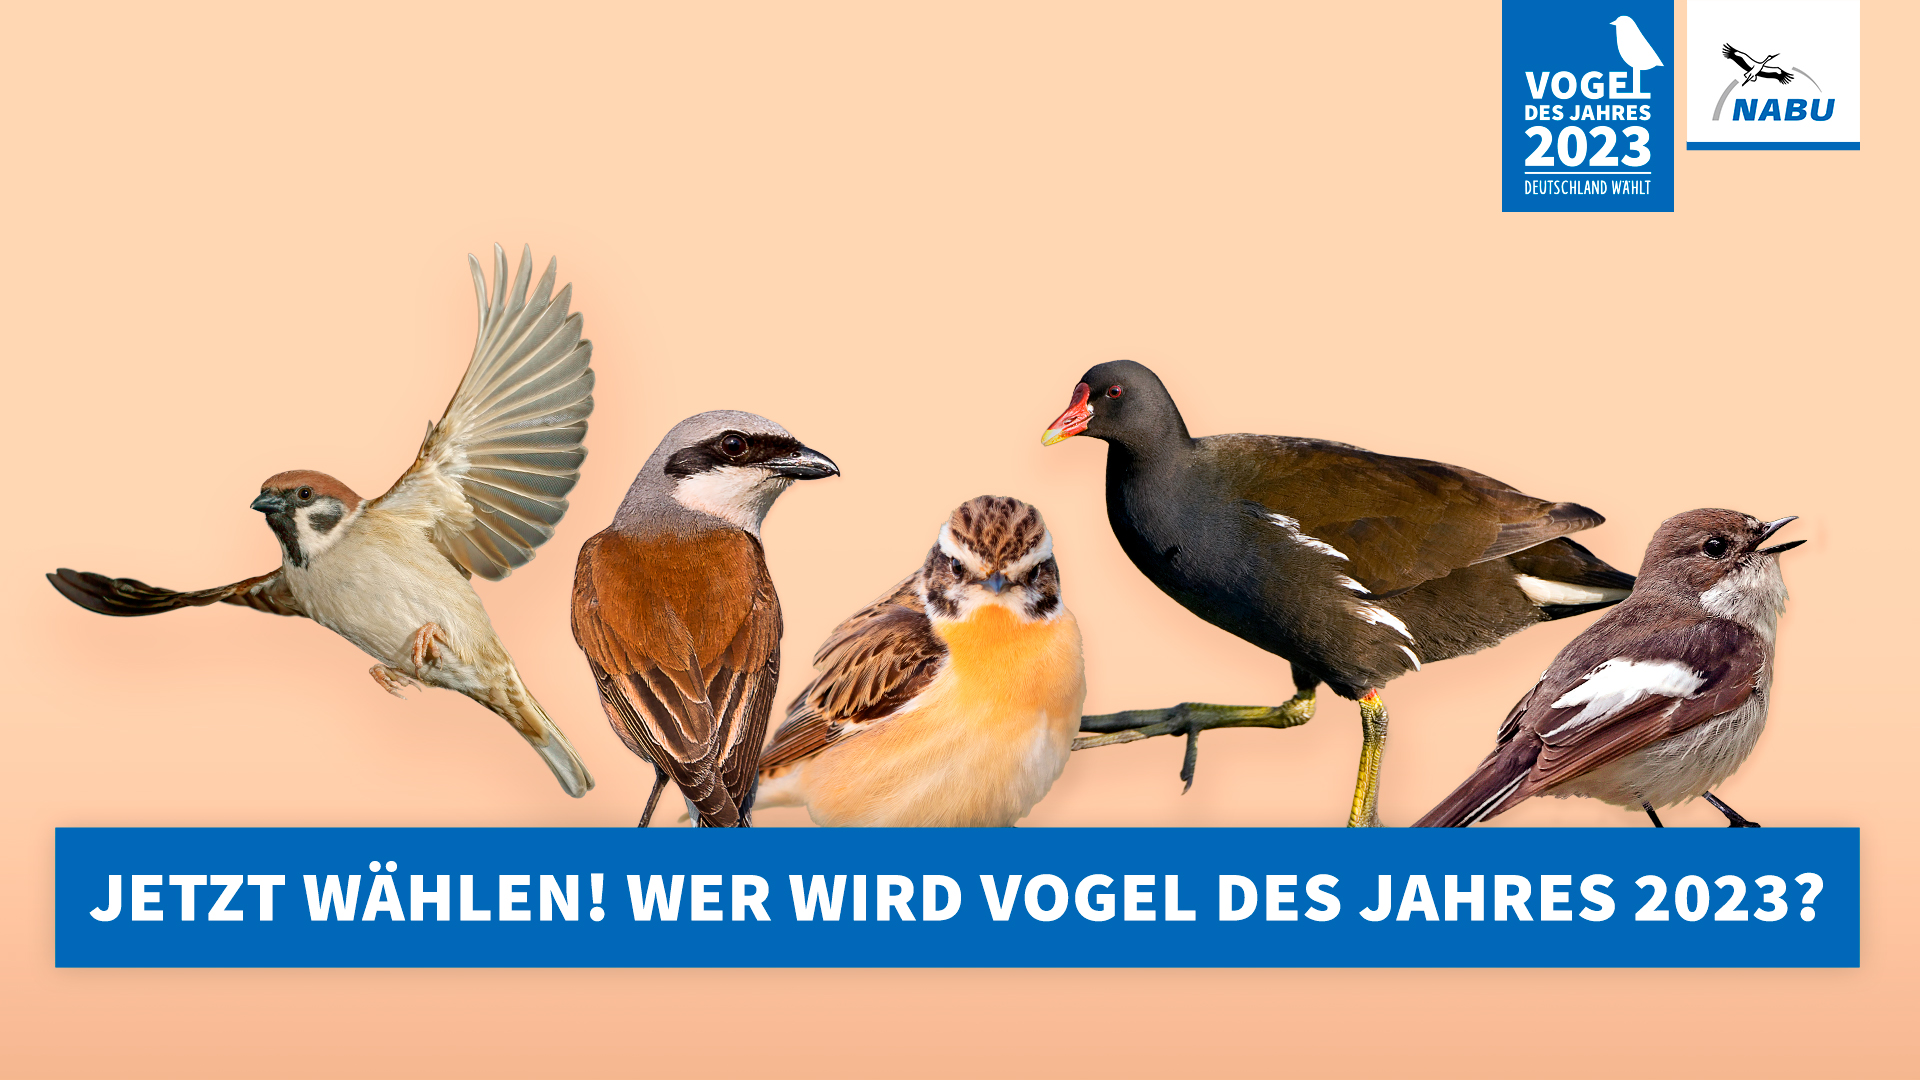 NABU-Wahlplakat zur Wahl des Vogel des Jahres 2023, auf dem die Anwärter Feldsperling, Neuntöter, Braunkehlchen, Teichhuhn und Trauerschnäppern abgebildet sind.